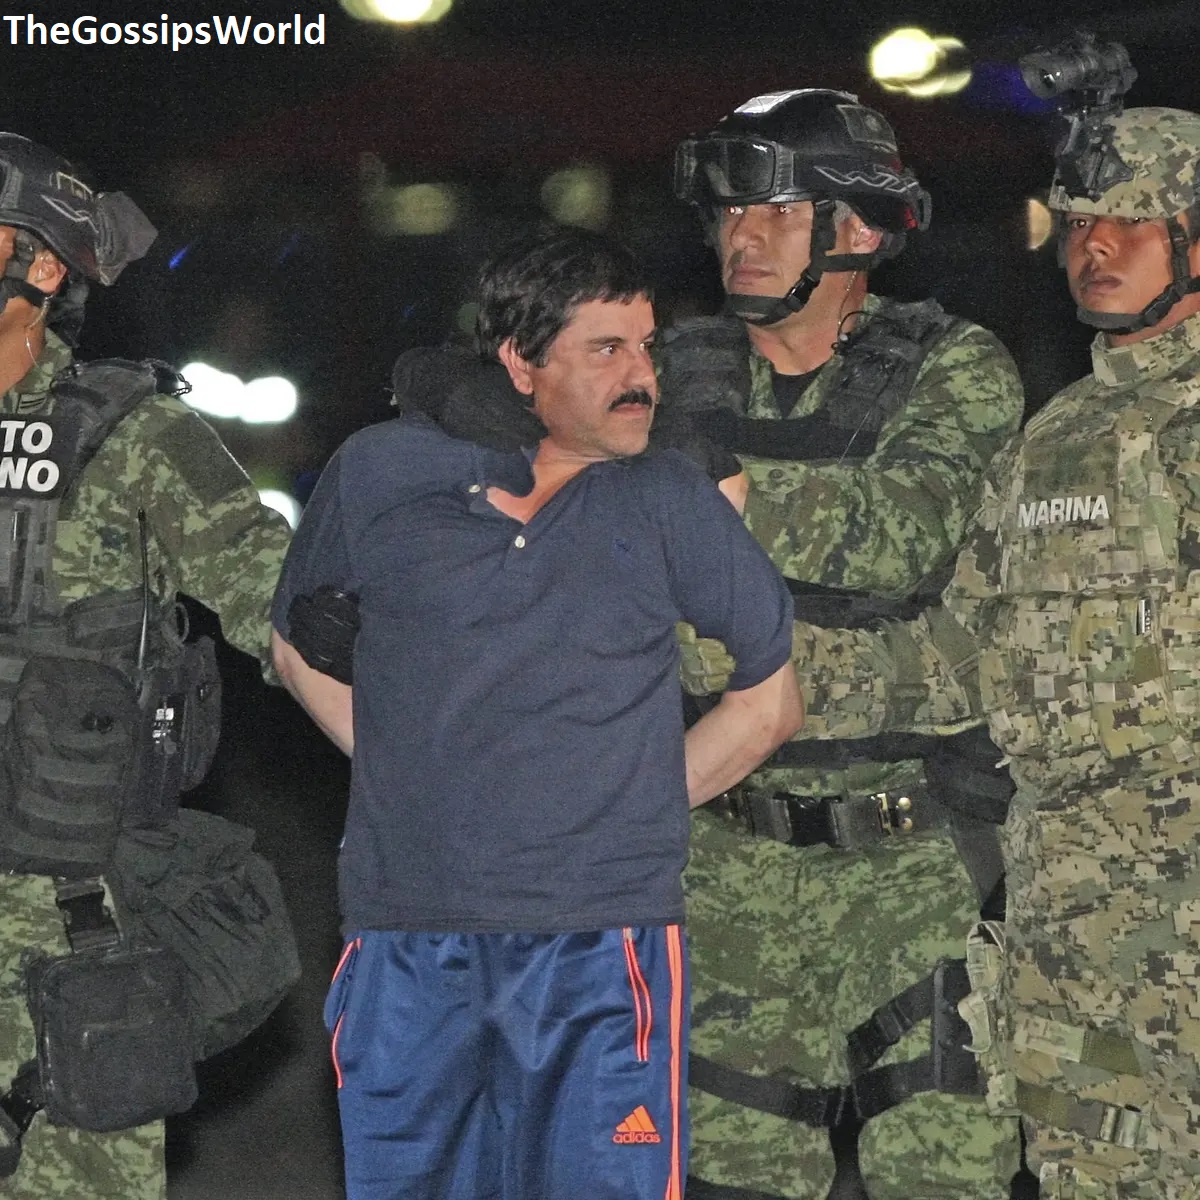 Mexican Drug Lord El Chapo Son Ovidio Guzman Arrested